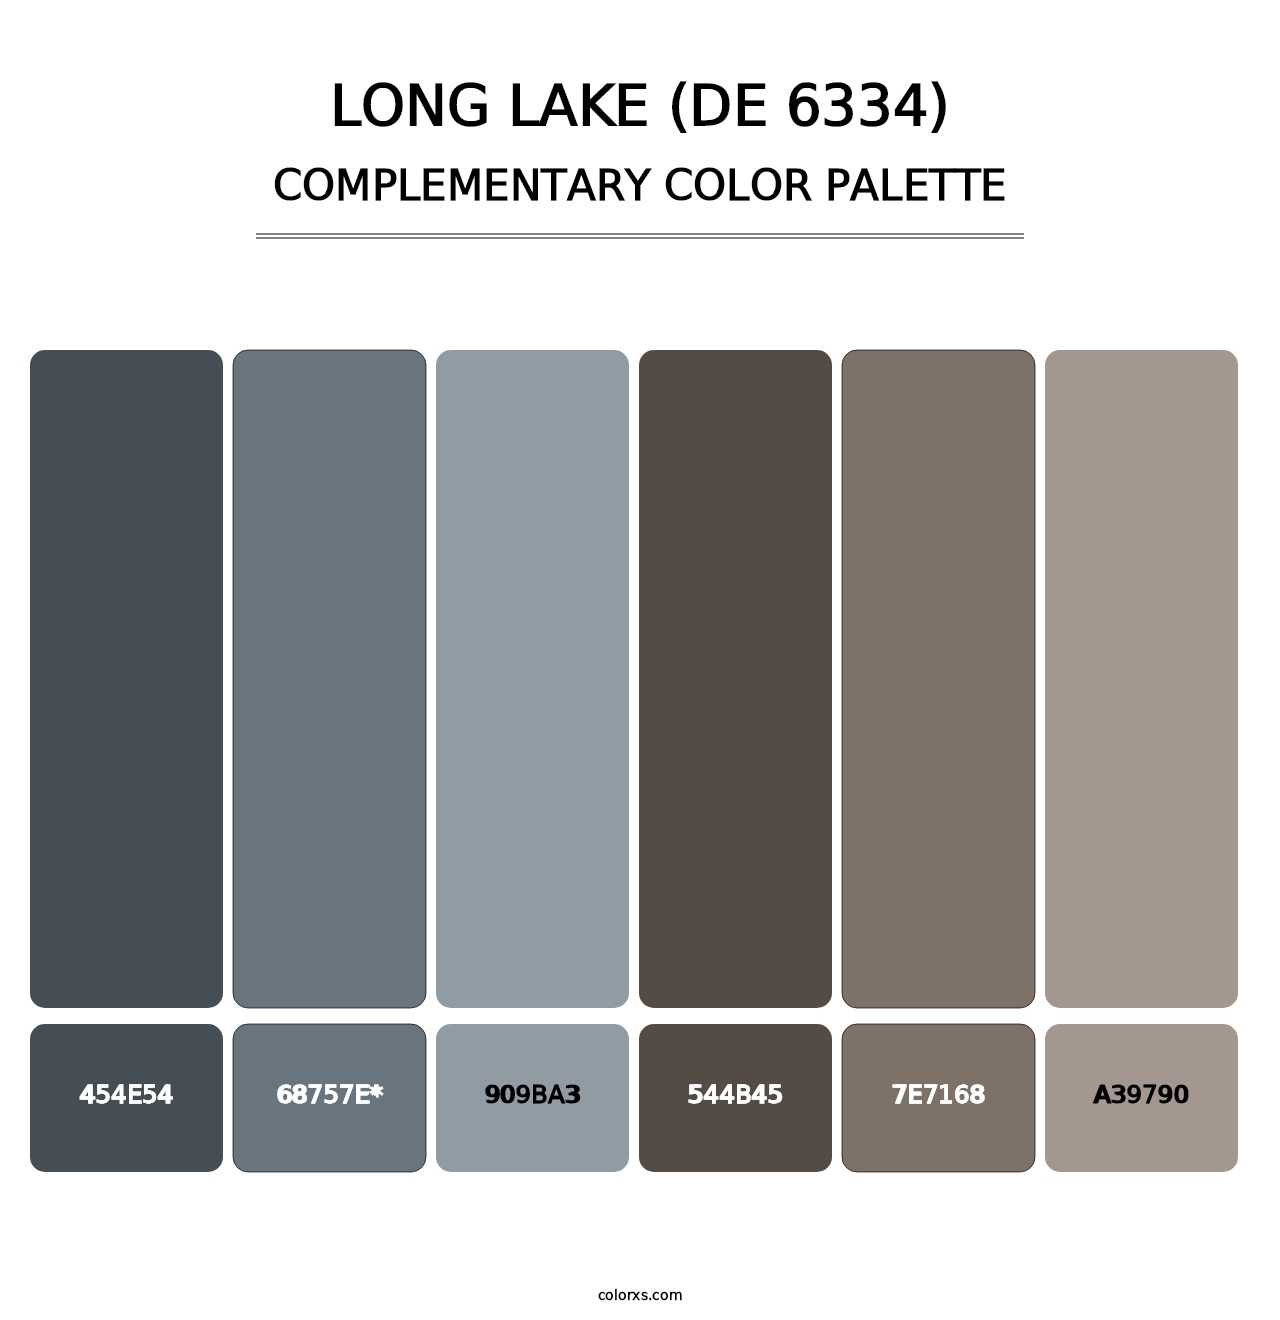 Long Lake (DE 6334) - Complementary Color Palette